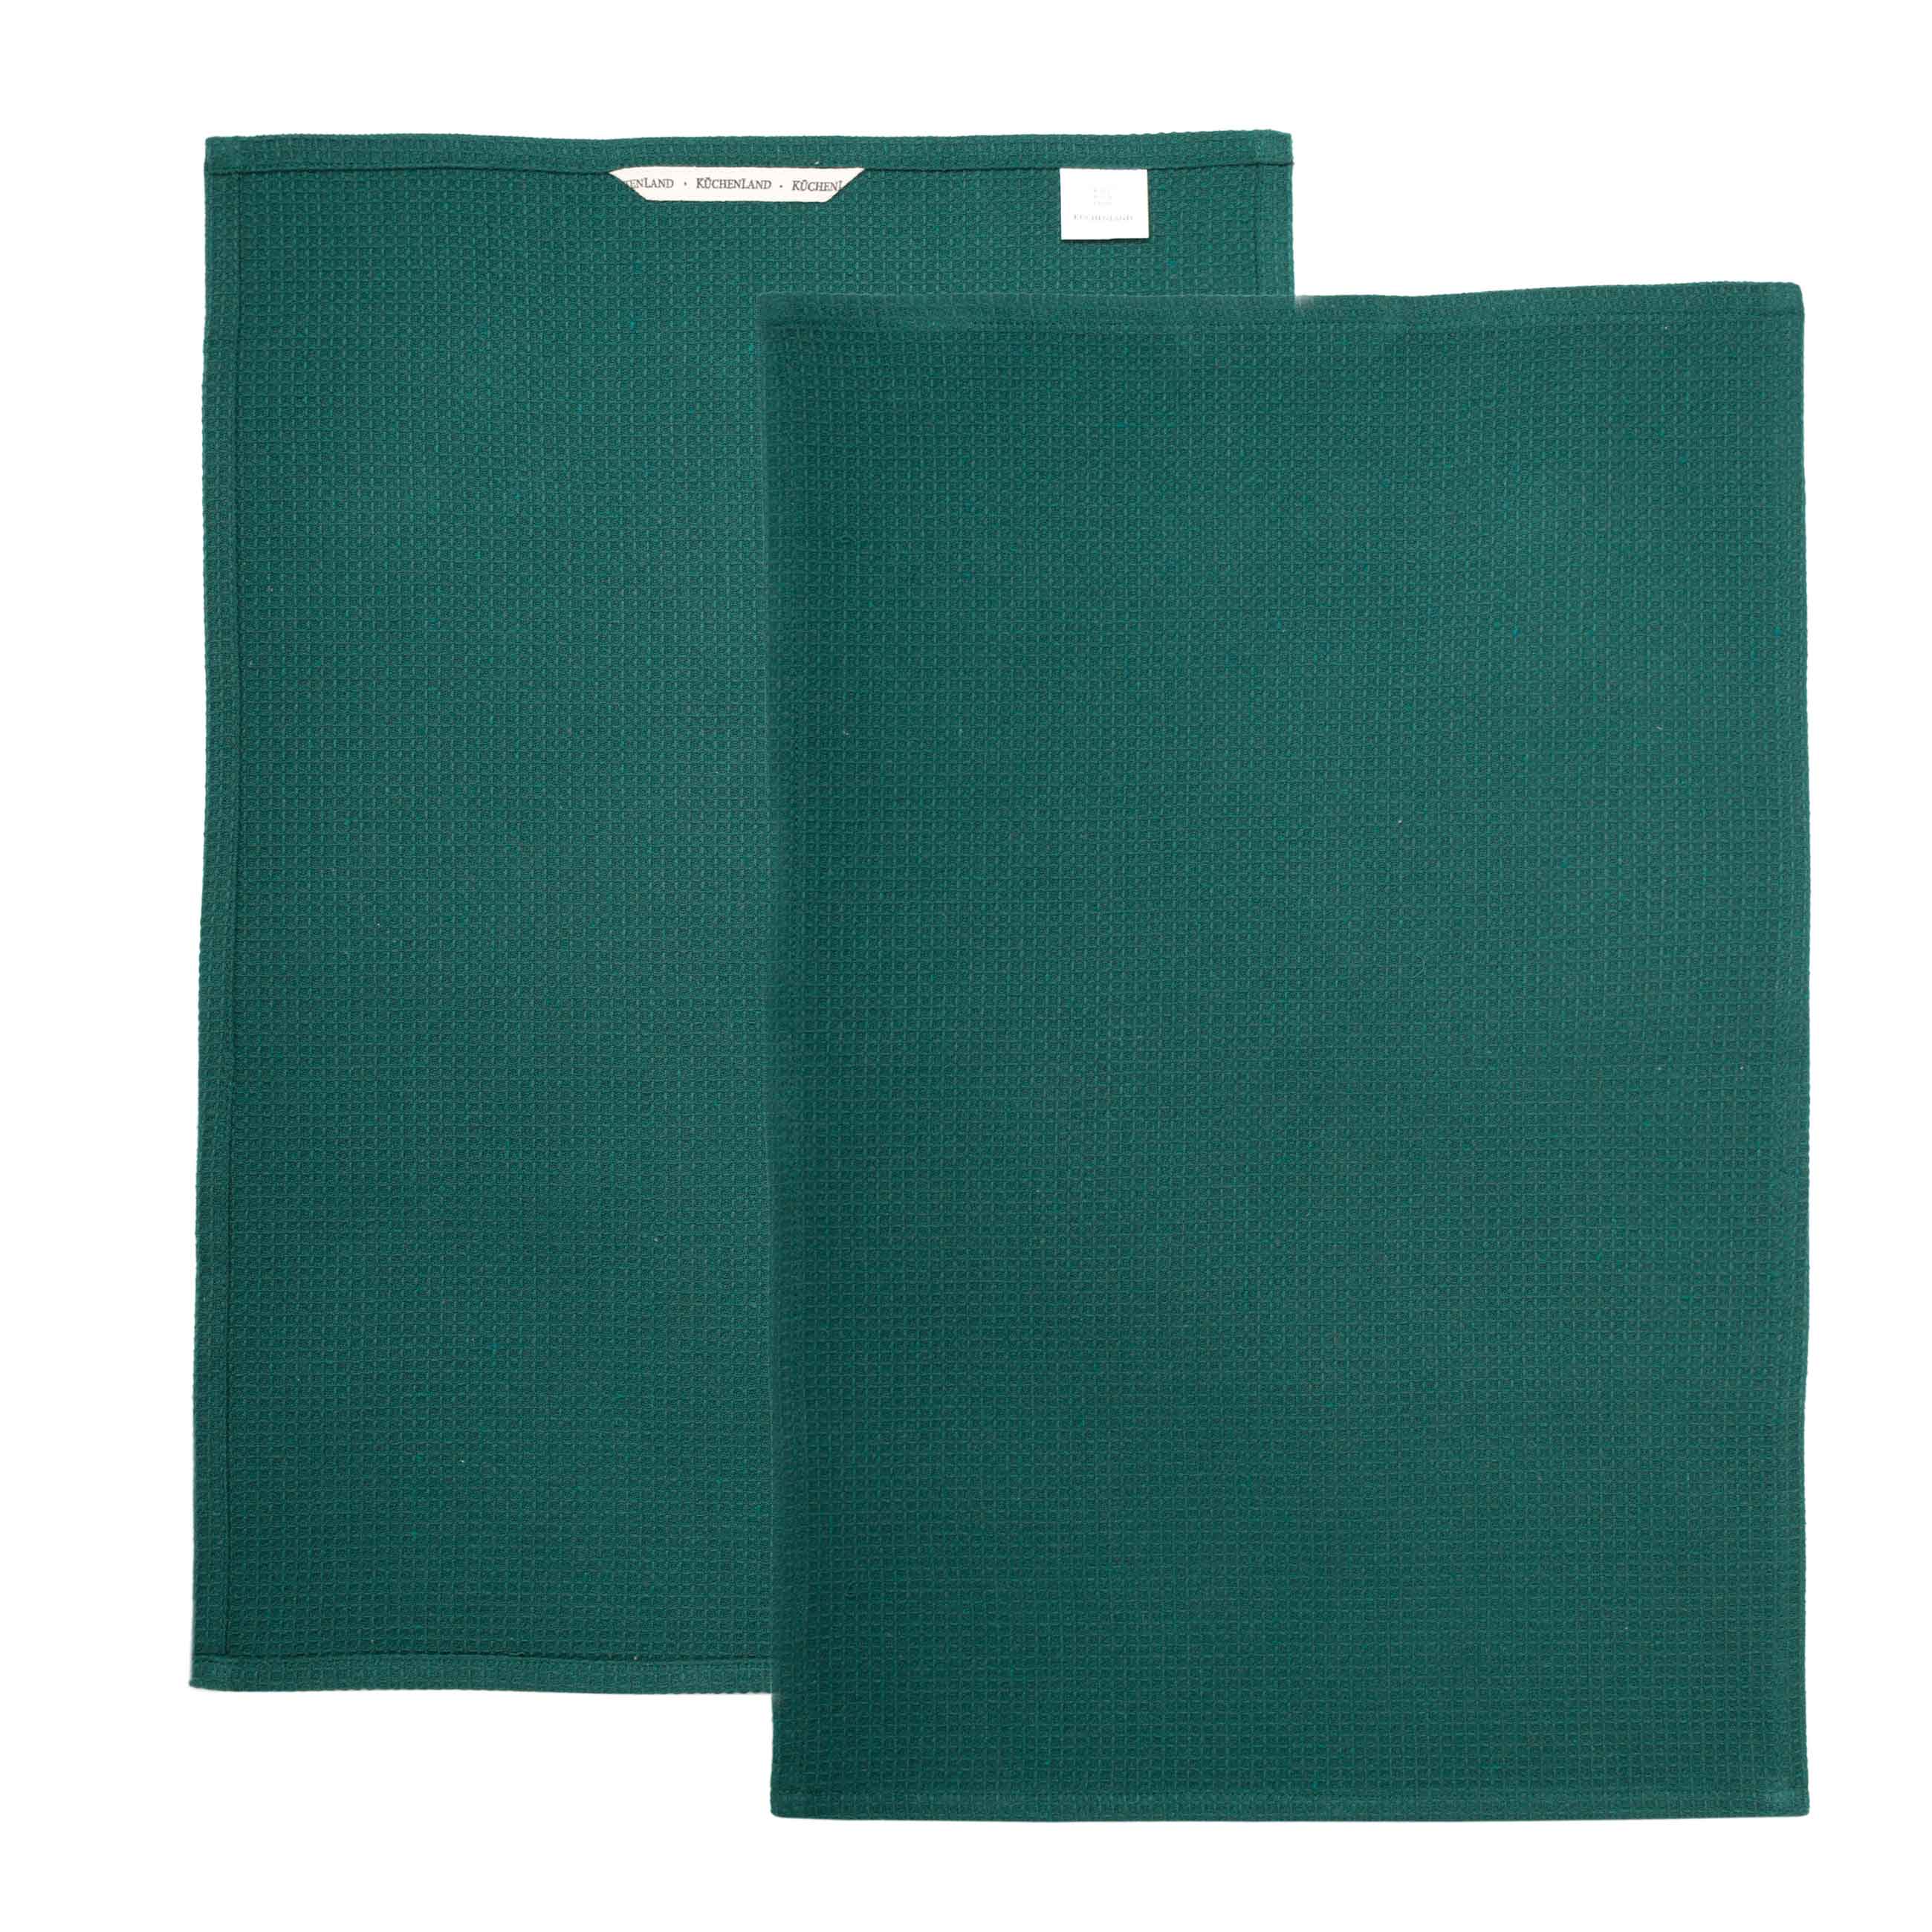 Полотенце кухонное, 40x60 см, 2 шт, хлопок, зеленое/красно-черное, Christmas classic